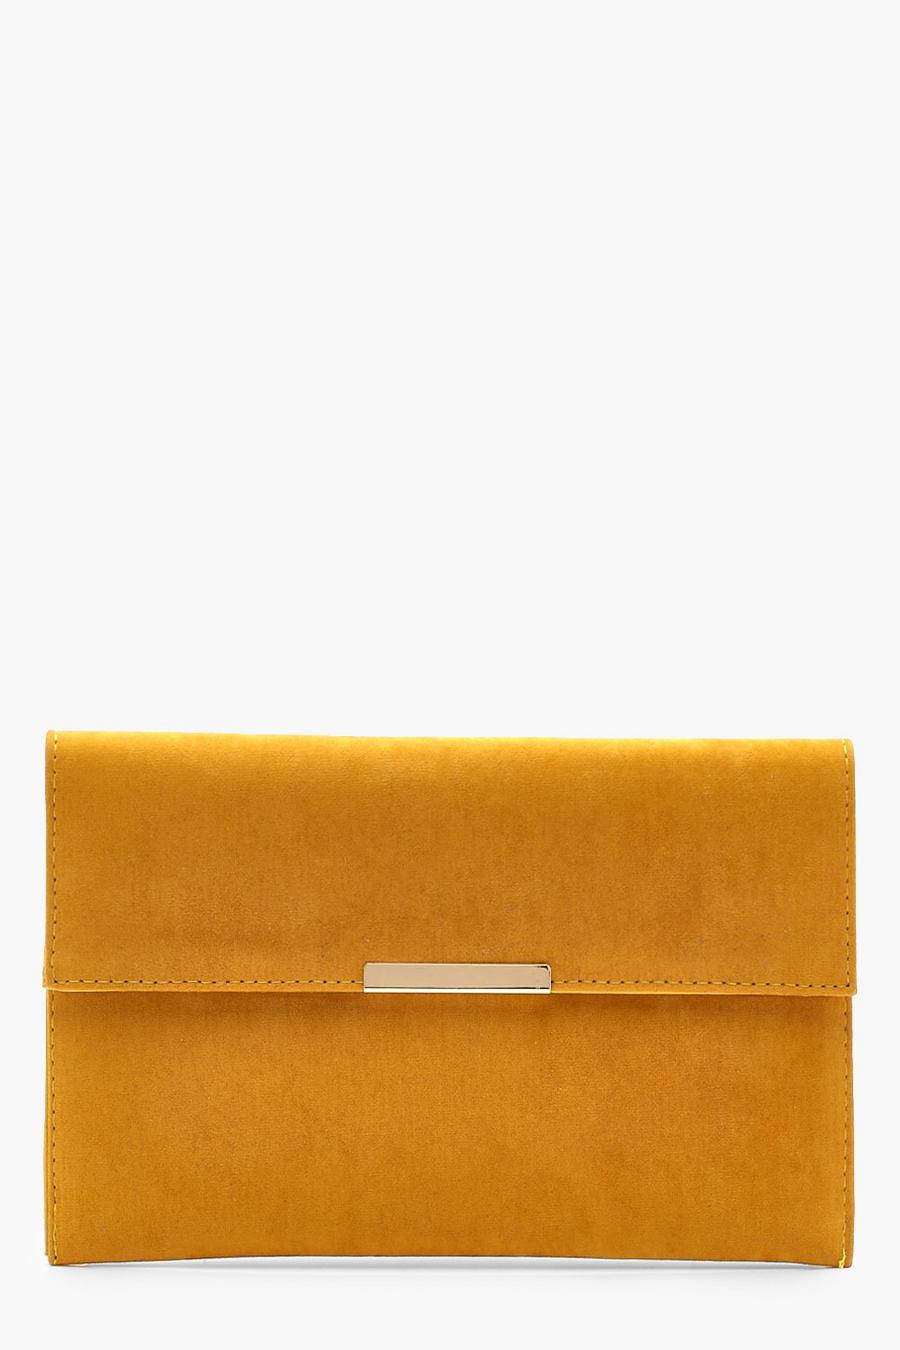 Mustard Envelope & Bar Clutch Bag image number 1